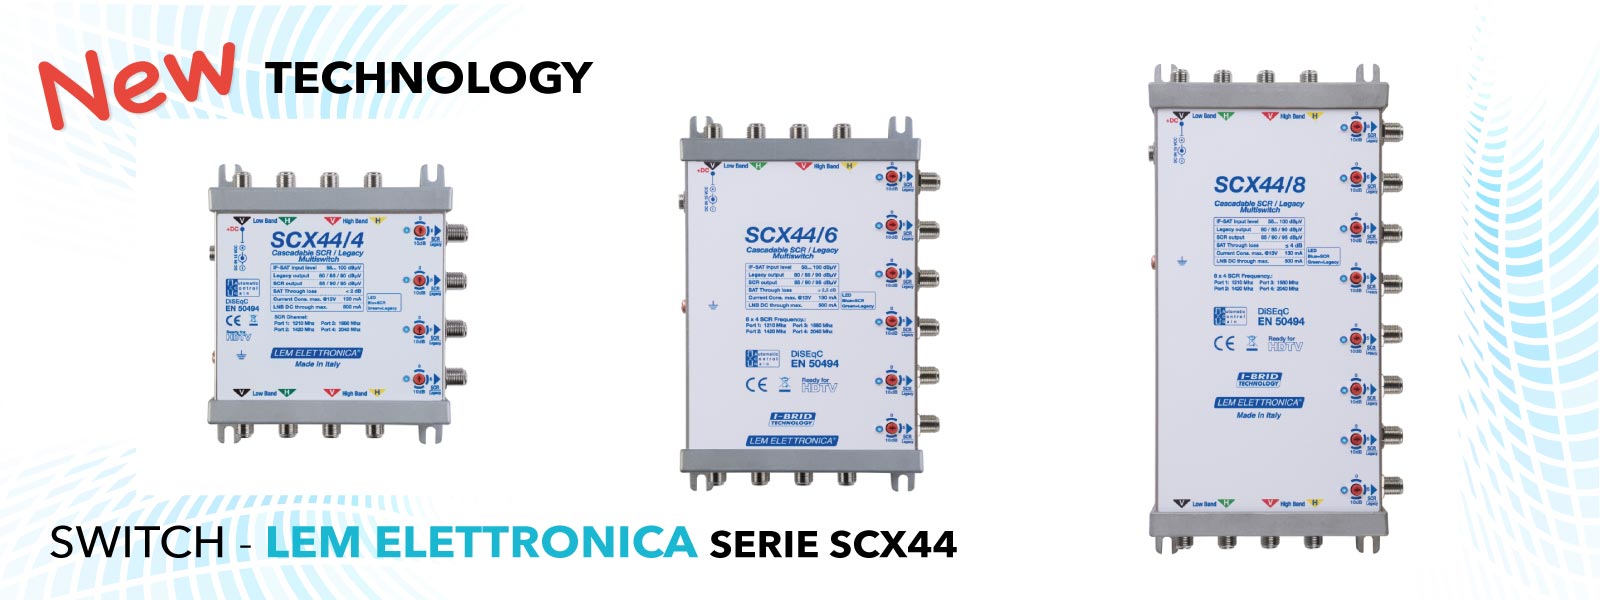 Nuova tecnologia, Switch satellitare Lem Elettronica - Serie SCX44